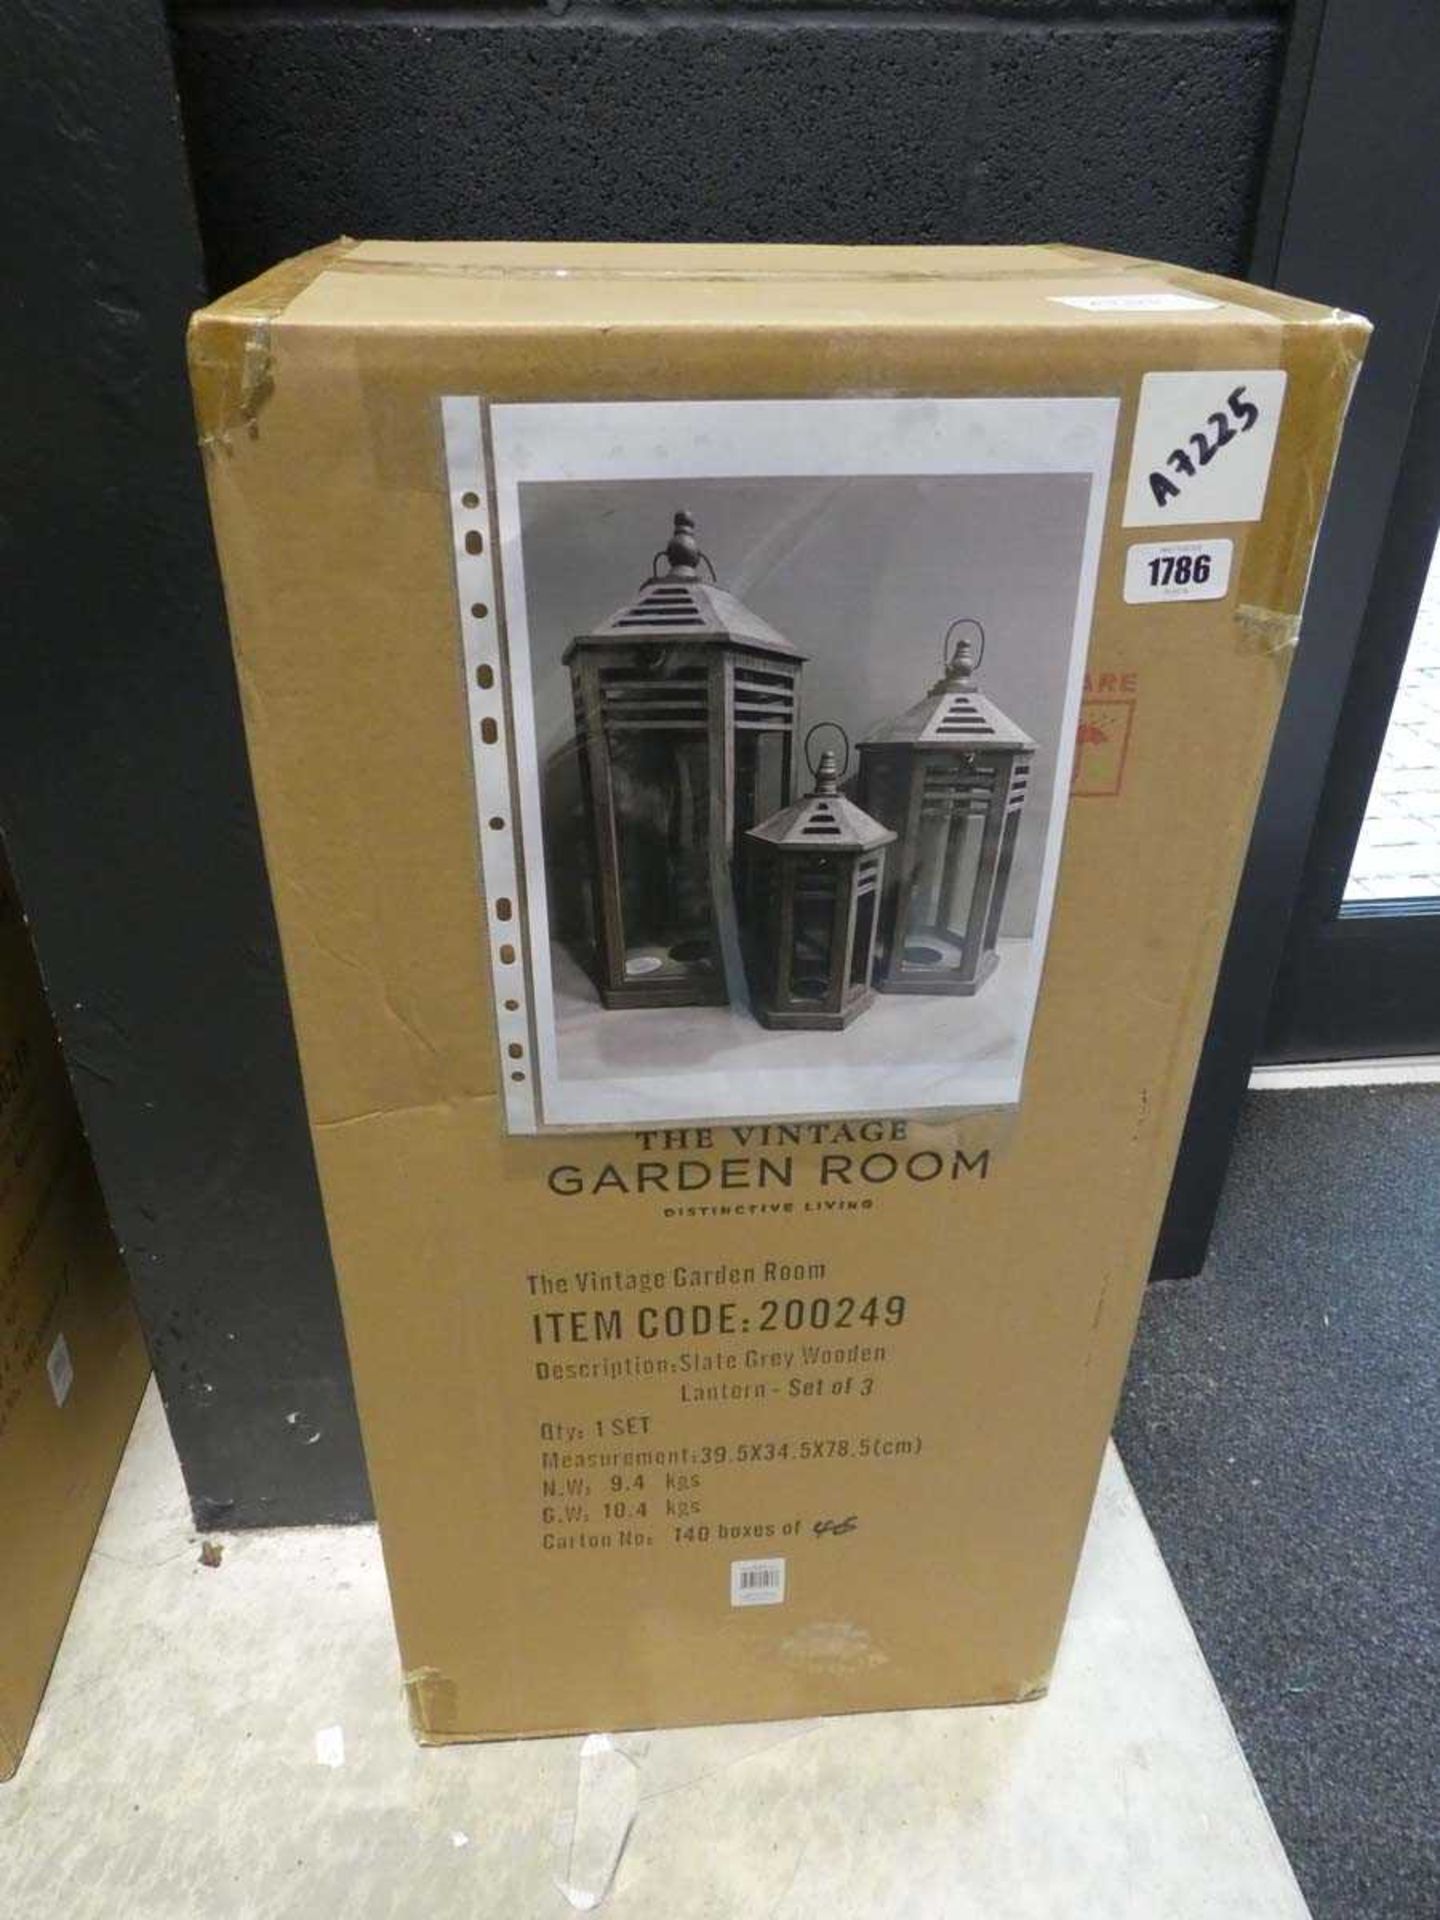 Boxed set of 3 Vintage Garden Room slate grey wooden lanterns